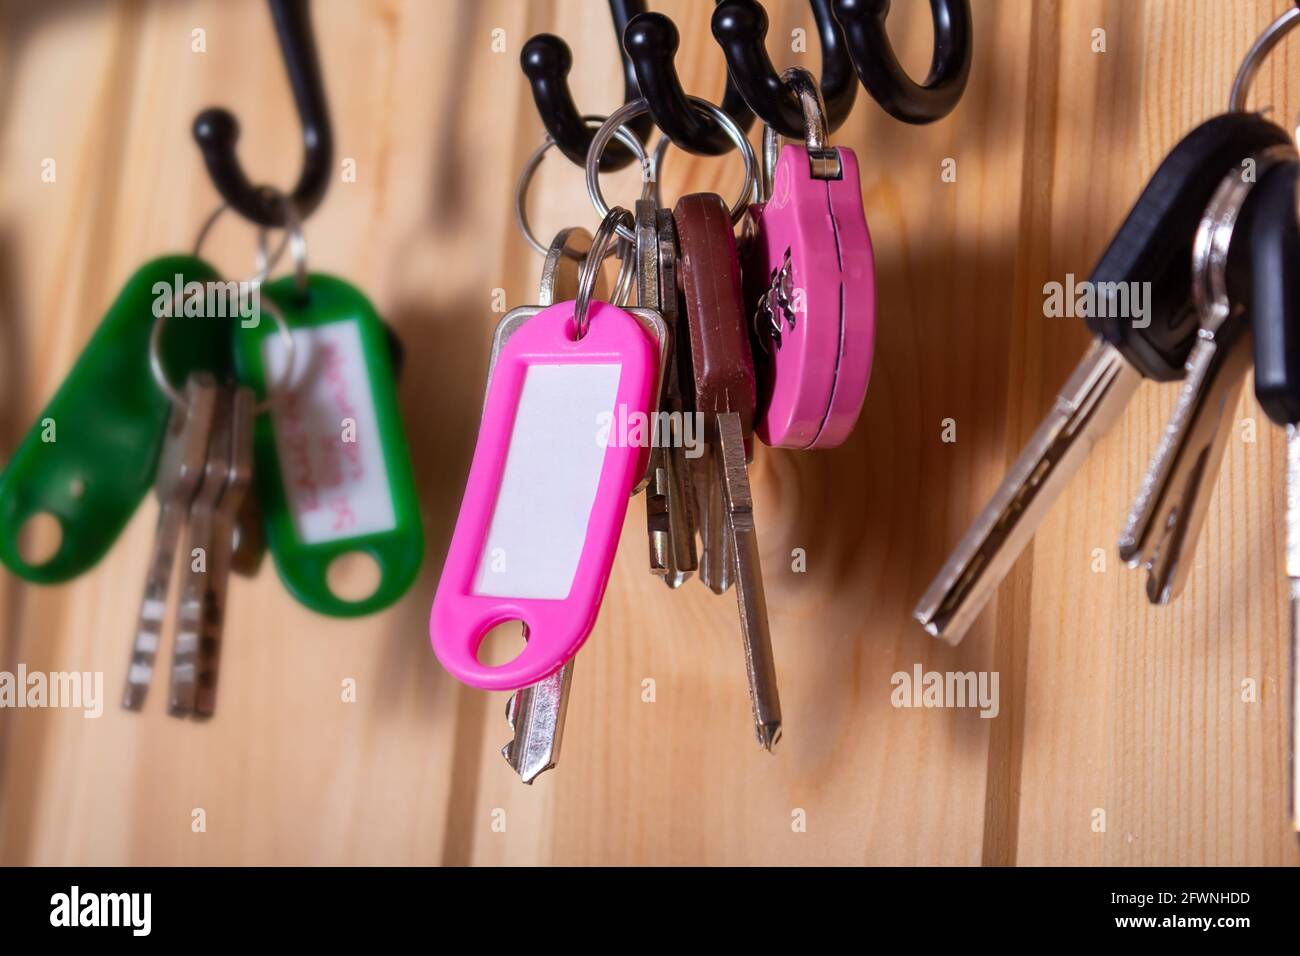 Pinkfarbener Schlüsselanhänger mit Kopierraum und Schlüsseln an Haken im Flur. Holzwand als Hintergrund. Viele andere Schlüsselanhänger herum. Geringe Schärfentiefe. Stockfoto